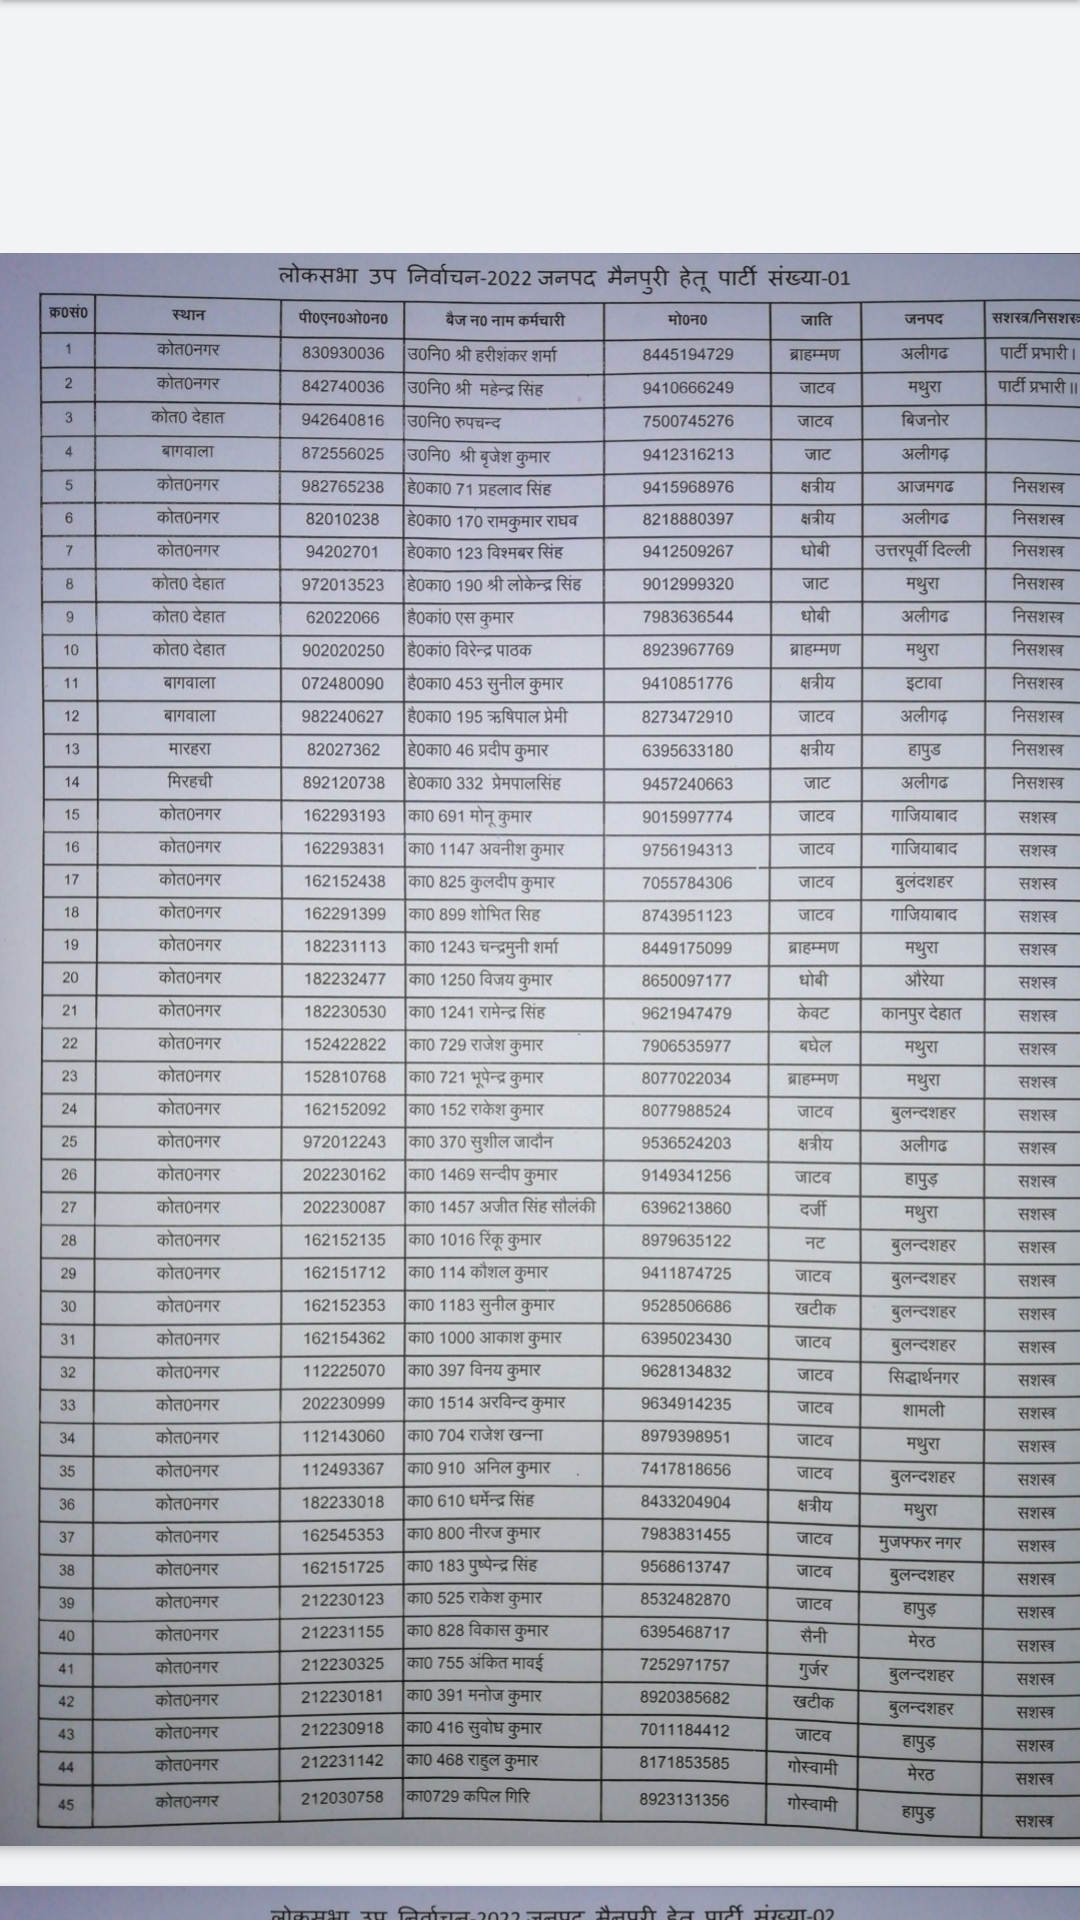 मैनपुरी लोकसभा उपचुनाव में ड्यूटी के लिए जारी पुलिसकर्मियों की सूची.